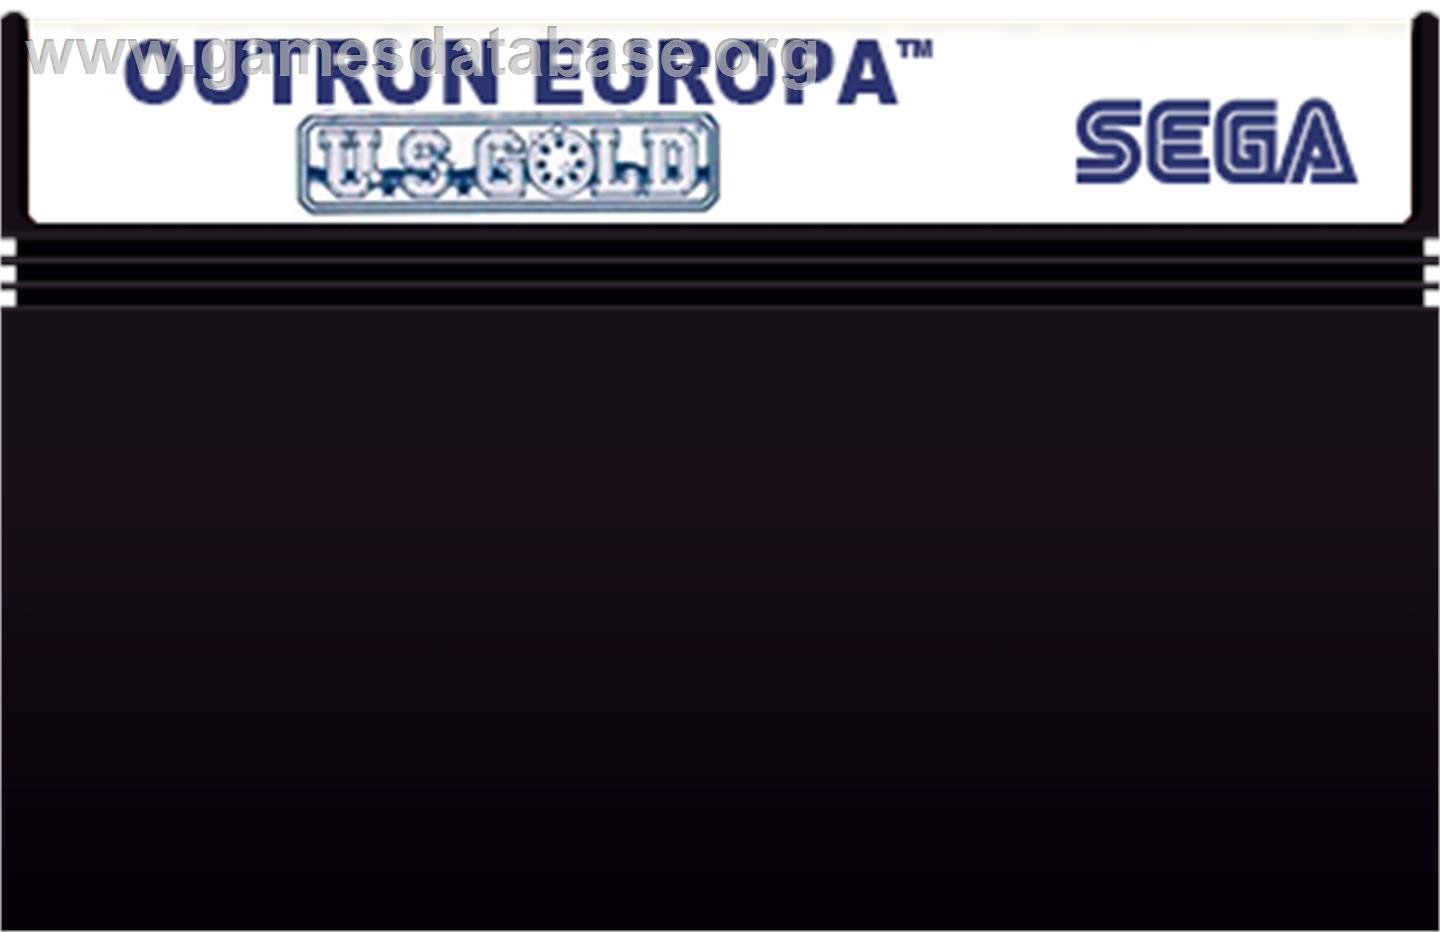 Out Run Europa - Sega Master System - Artwork - Cartridge